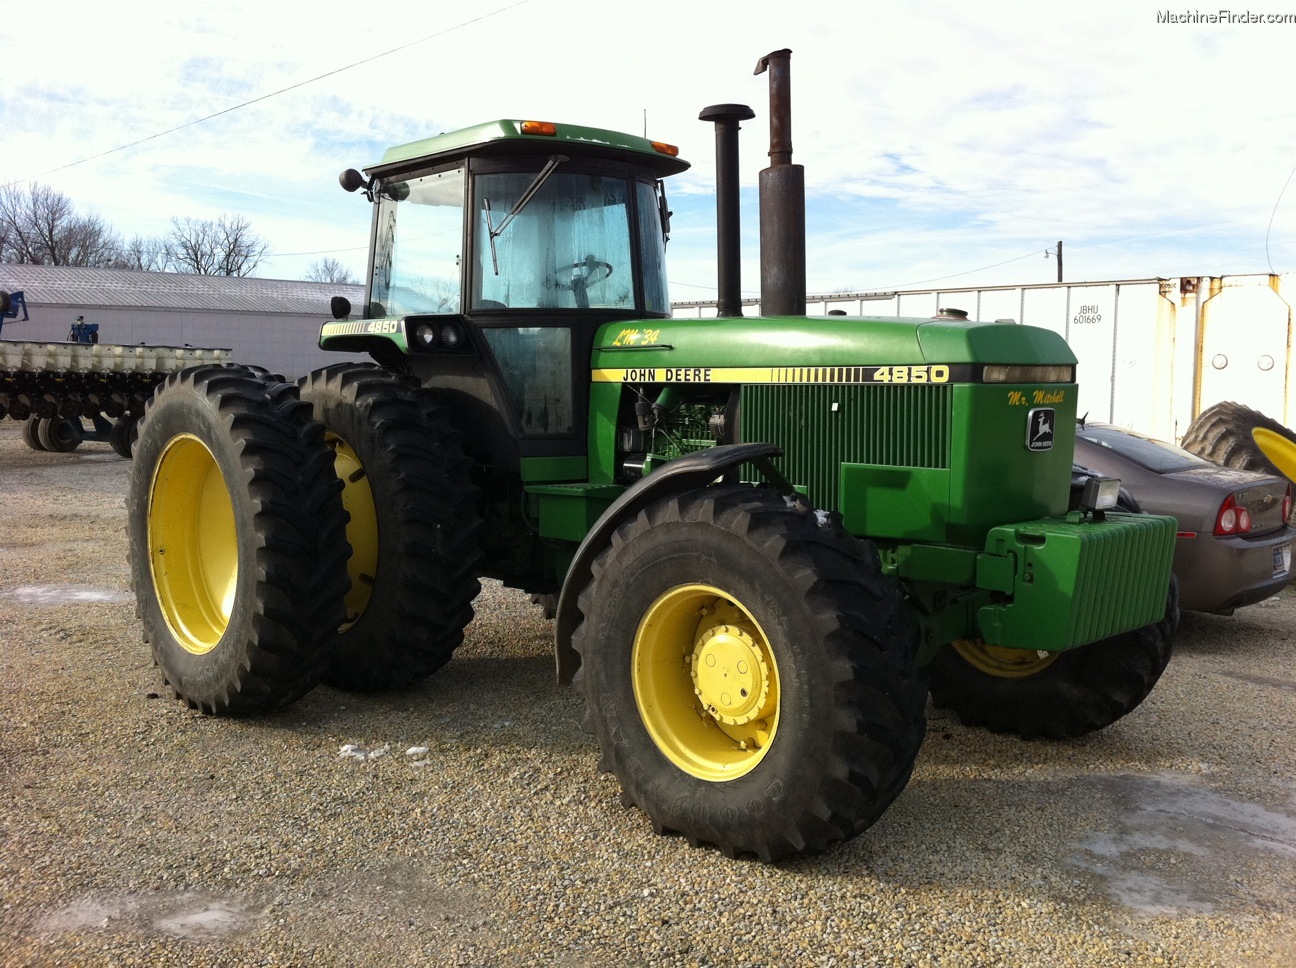 1984 John Deere 4850 Tractors - Row Crop (+100hp) - John Deere ...